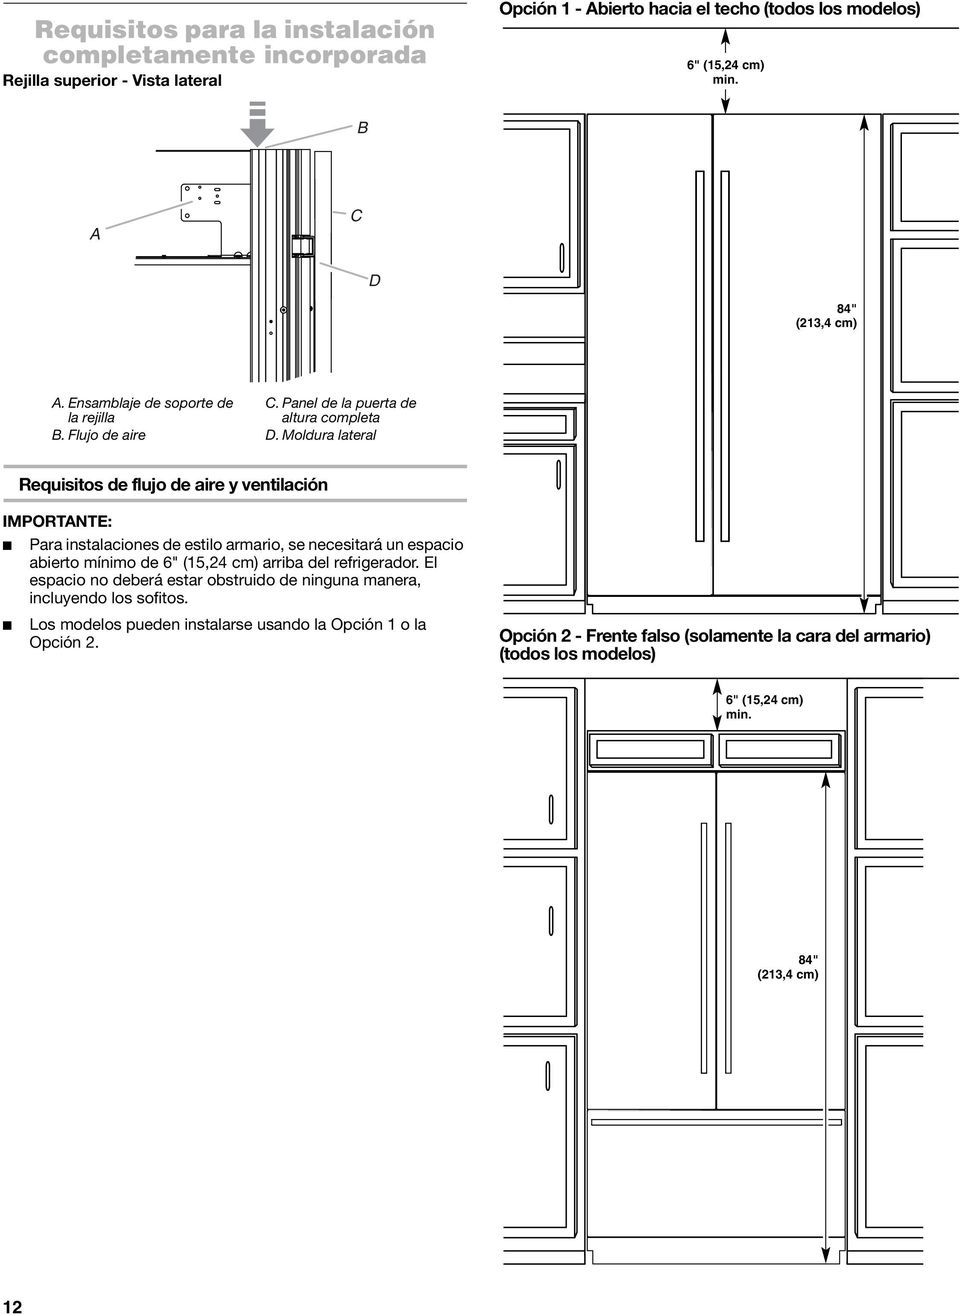 Moldura lateral Requisitos de flujo de aire y ventilación IMPORTNTE: Para instalaciones de estilo armario, se necesitará un espacio abierto mínimo de 6" (15,24 cm) arriba del